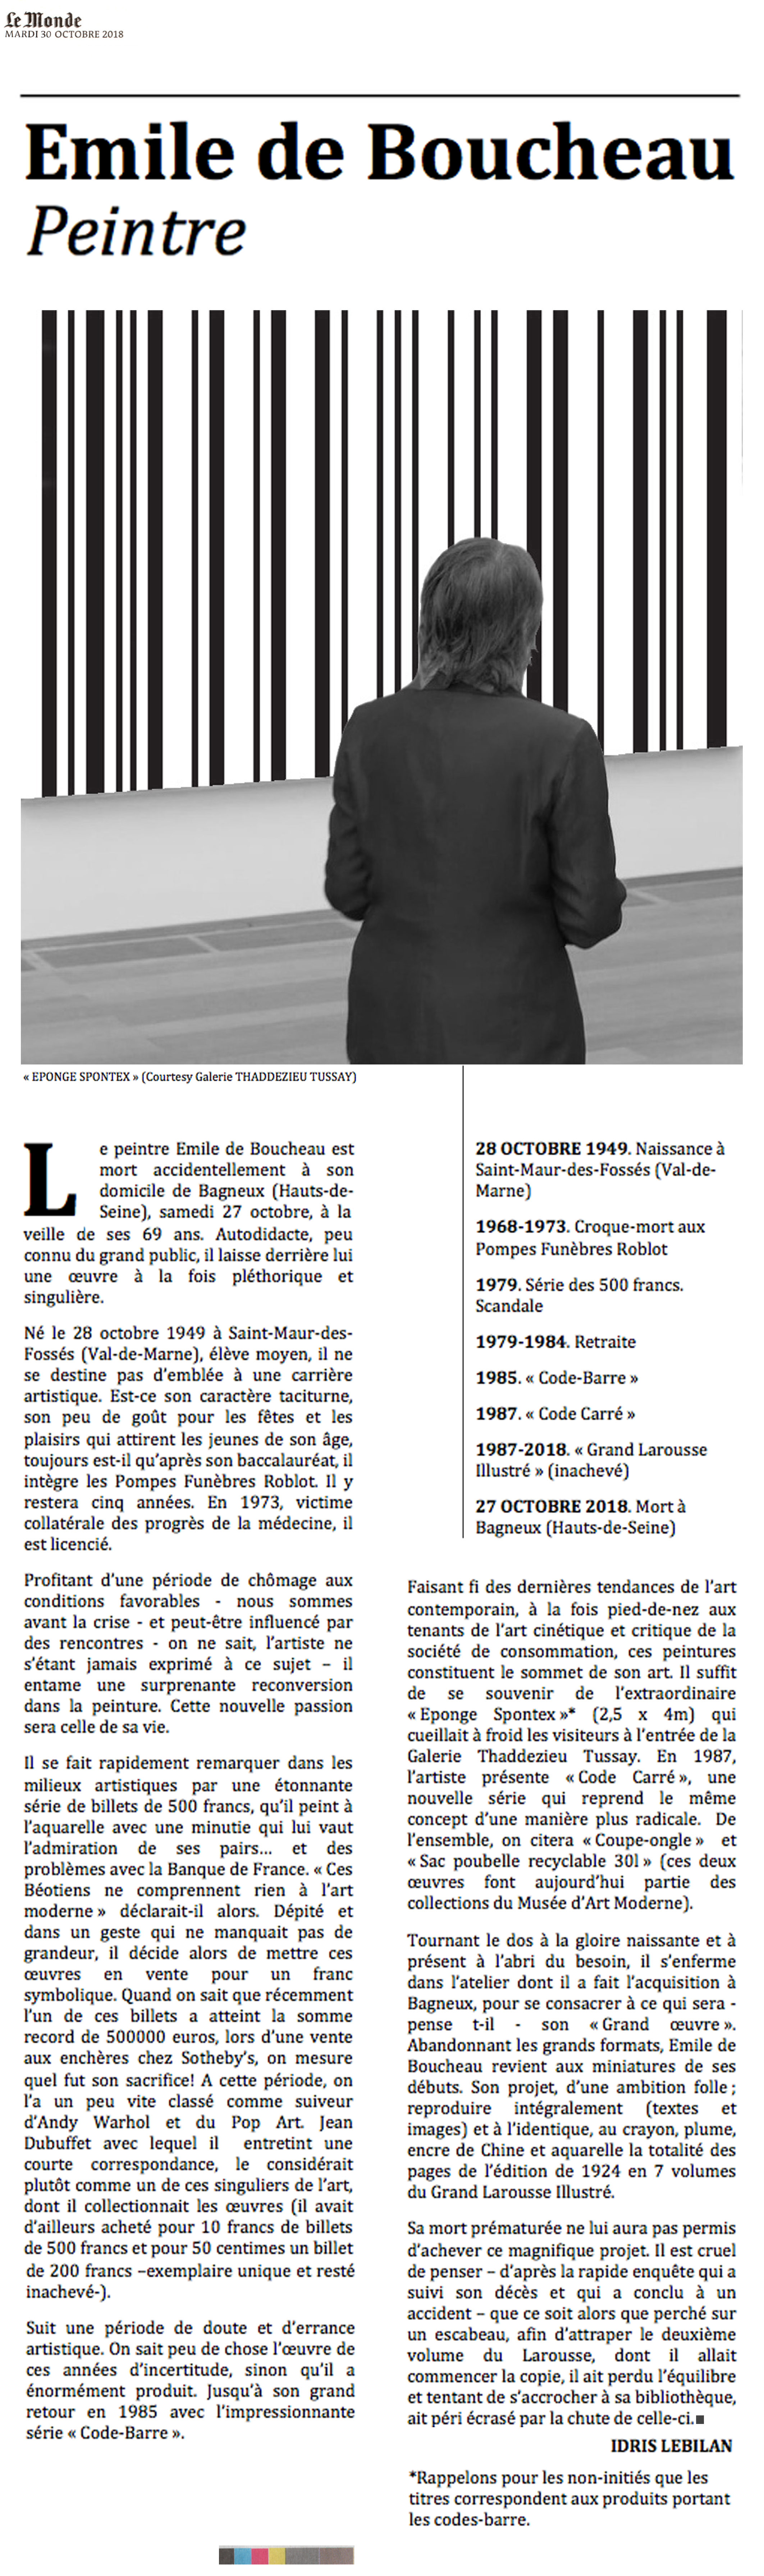 Disparition. Emile de Boucheau 1949-2018 - Choses revues par Philippe Mignon